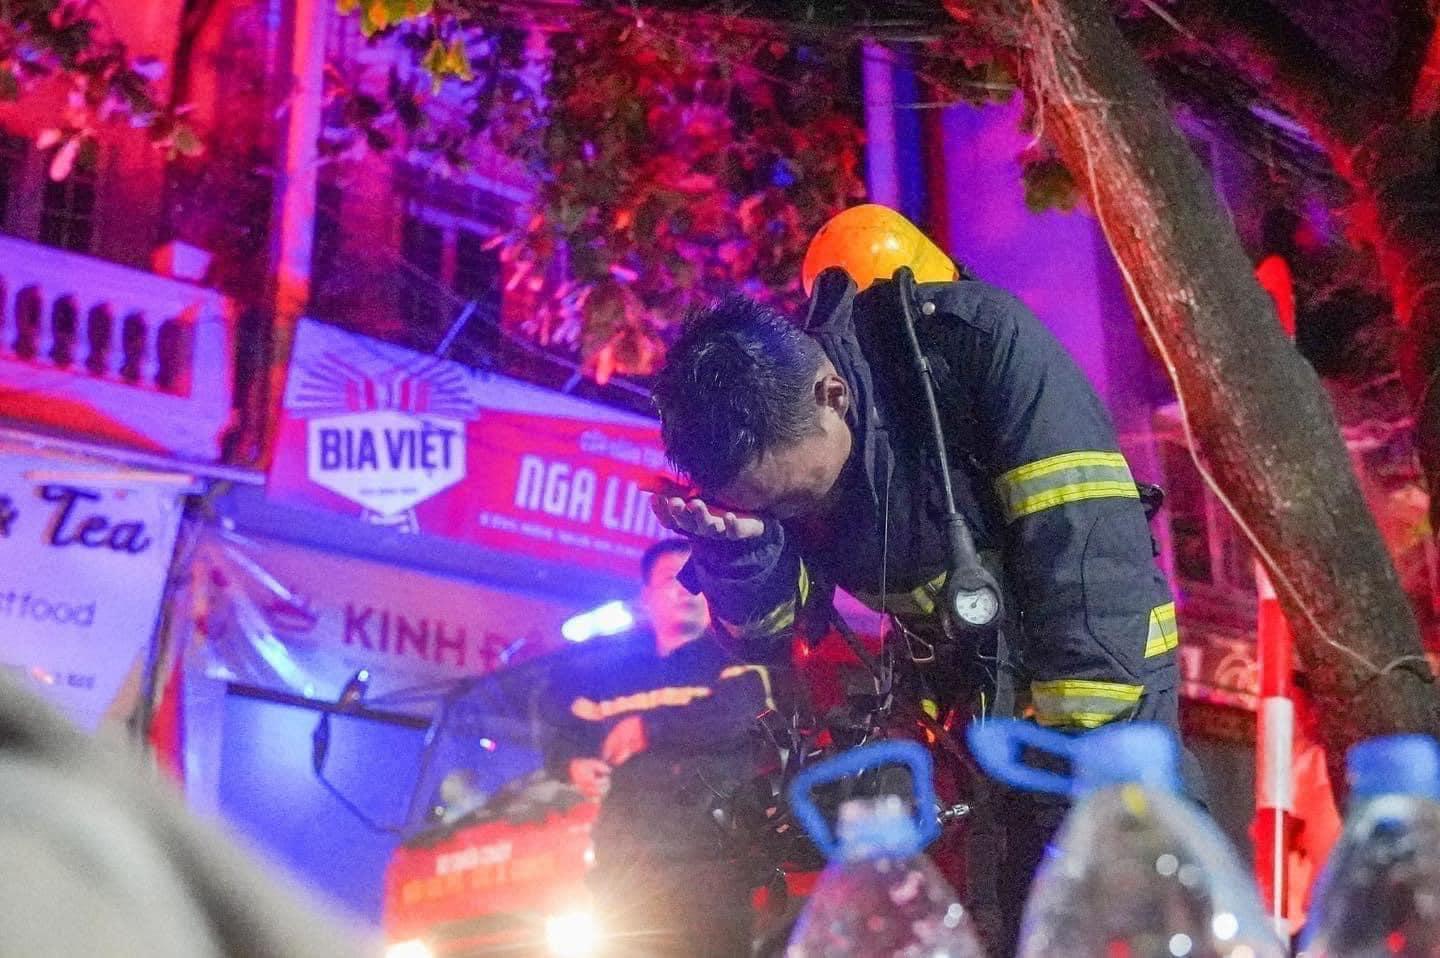 Hoa hậu Thùy Tiên hỗ trợ 25 nạn nhân cháy chung cư nhưng vẫn bị anti fan tìm cớ mỉa mai 1 điều - ảnh 2